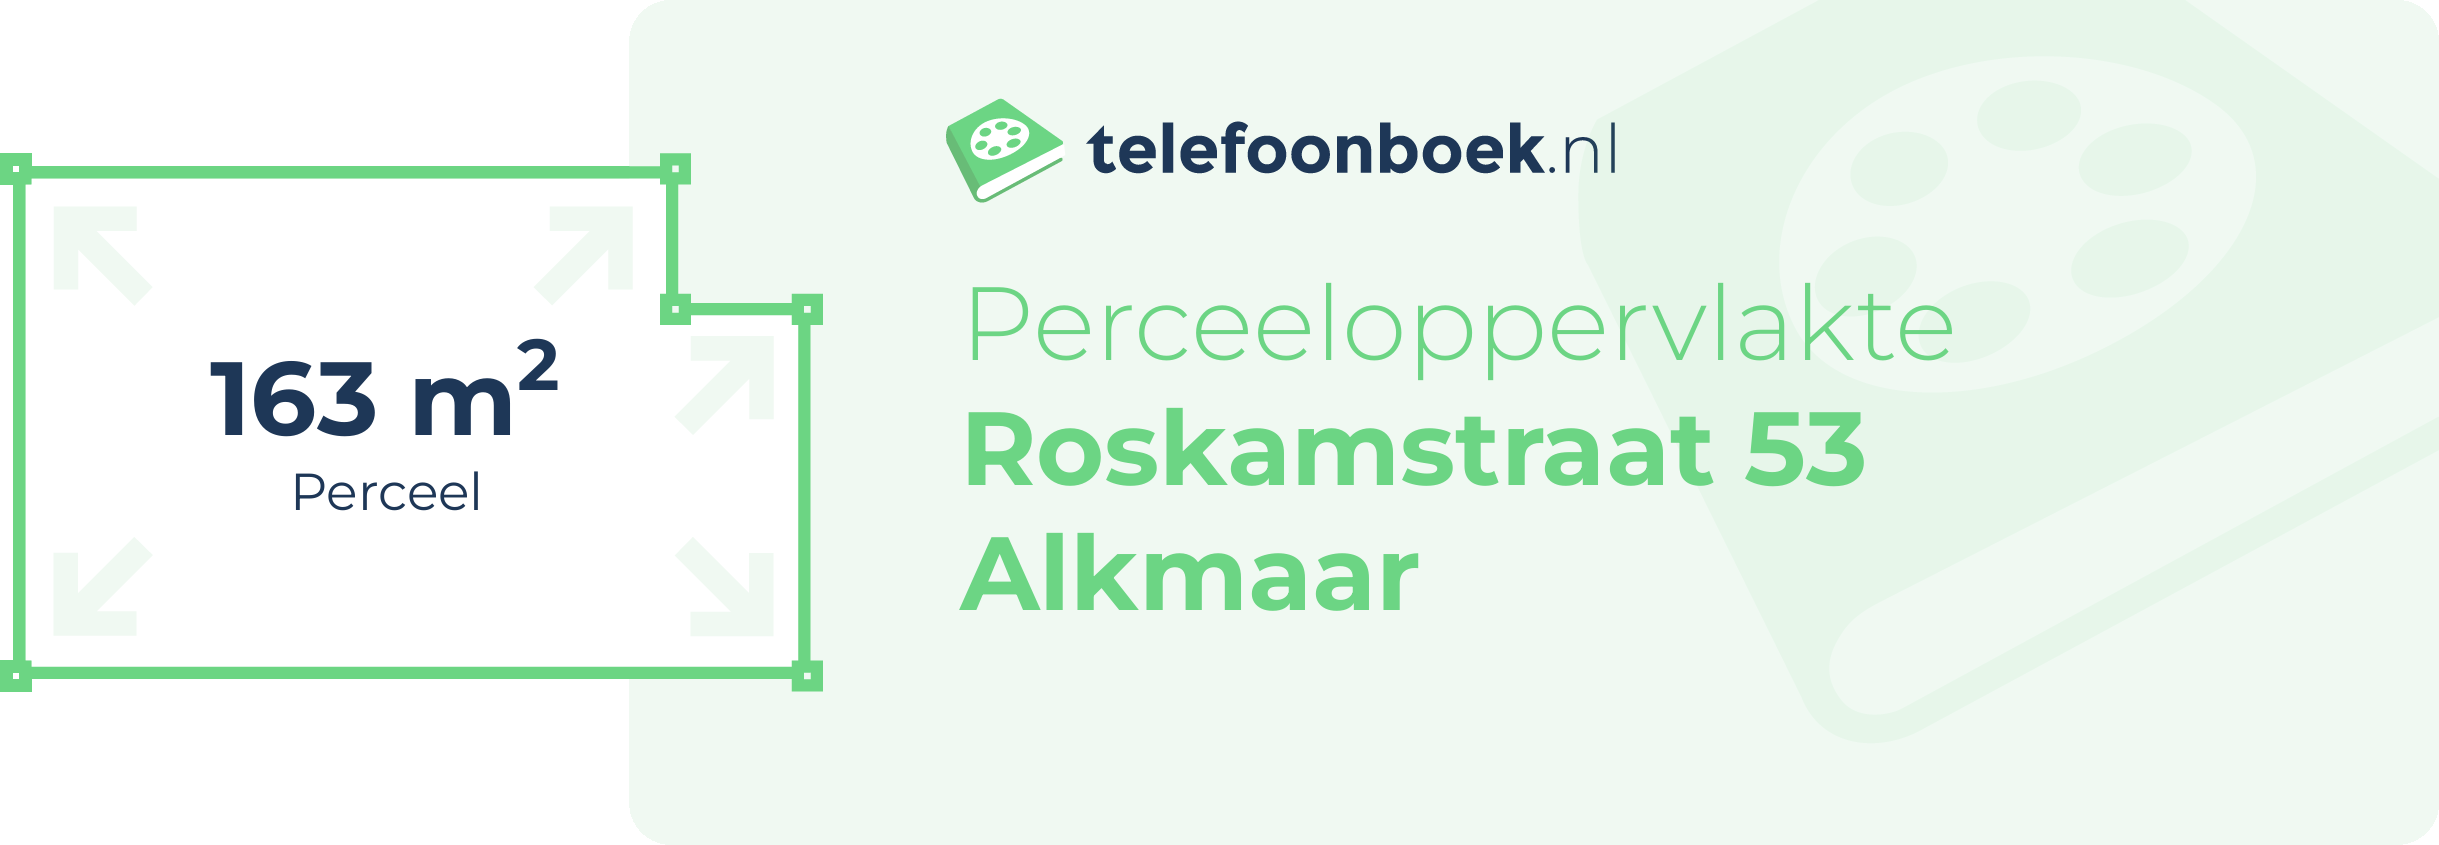 Perceeloppervlakte Roskamstraat 53 Alkmaar